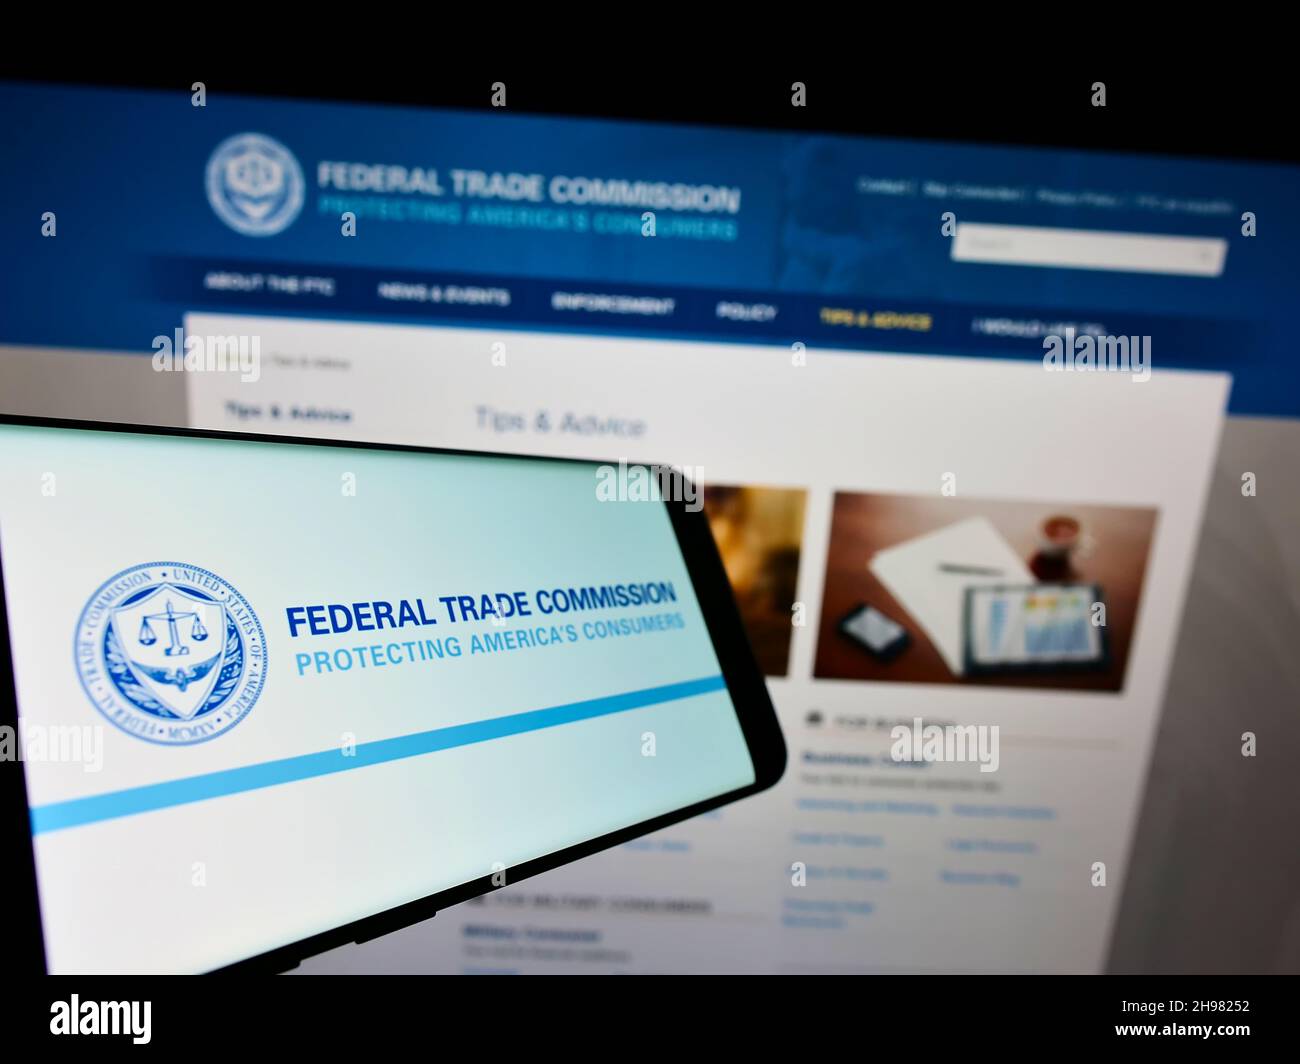 Smartphone con logo dell'agenzia governativa statunitense Federal Trade Commission (FTC) sullo schermo davanti al sito Web. Messa a fuoco al centro-sinistra del display del telefono. Foto Stock